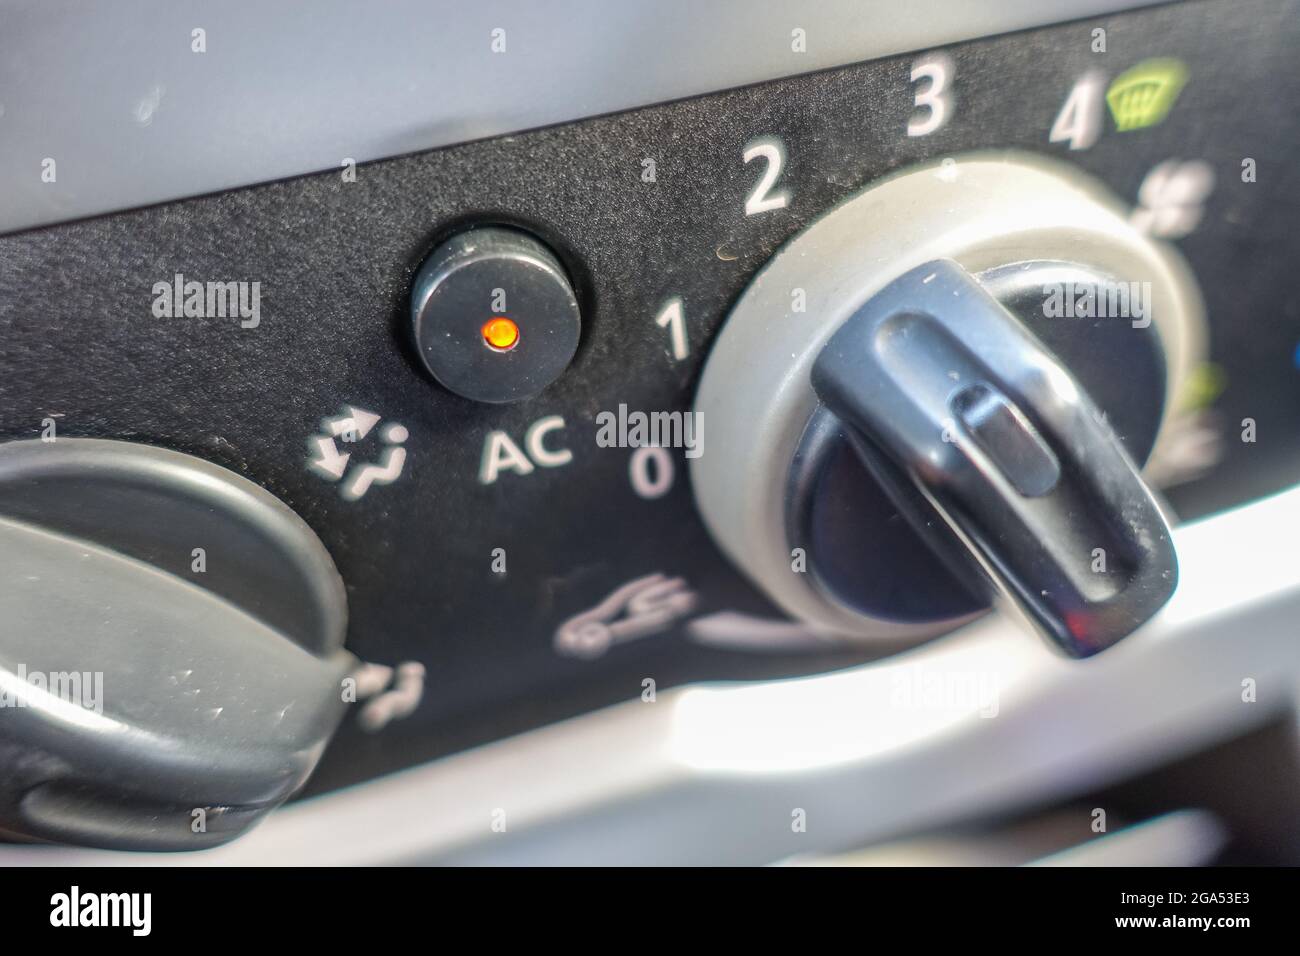 Danzig, Polen der Versuch, eine manuelle Klimaanlage (Klimaanlage) im Dacia  Sandero-Auto während eines heißen Sommertages einzurichten, wird am 28.  Juli 2021 in Danzig, Polen, gesehen.Quelle: Vadim Pacajev/Alamy Live News  Stockfotografie - Alamy